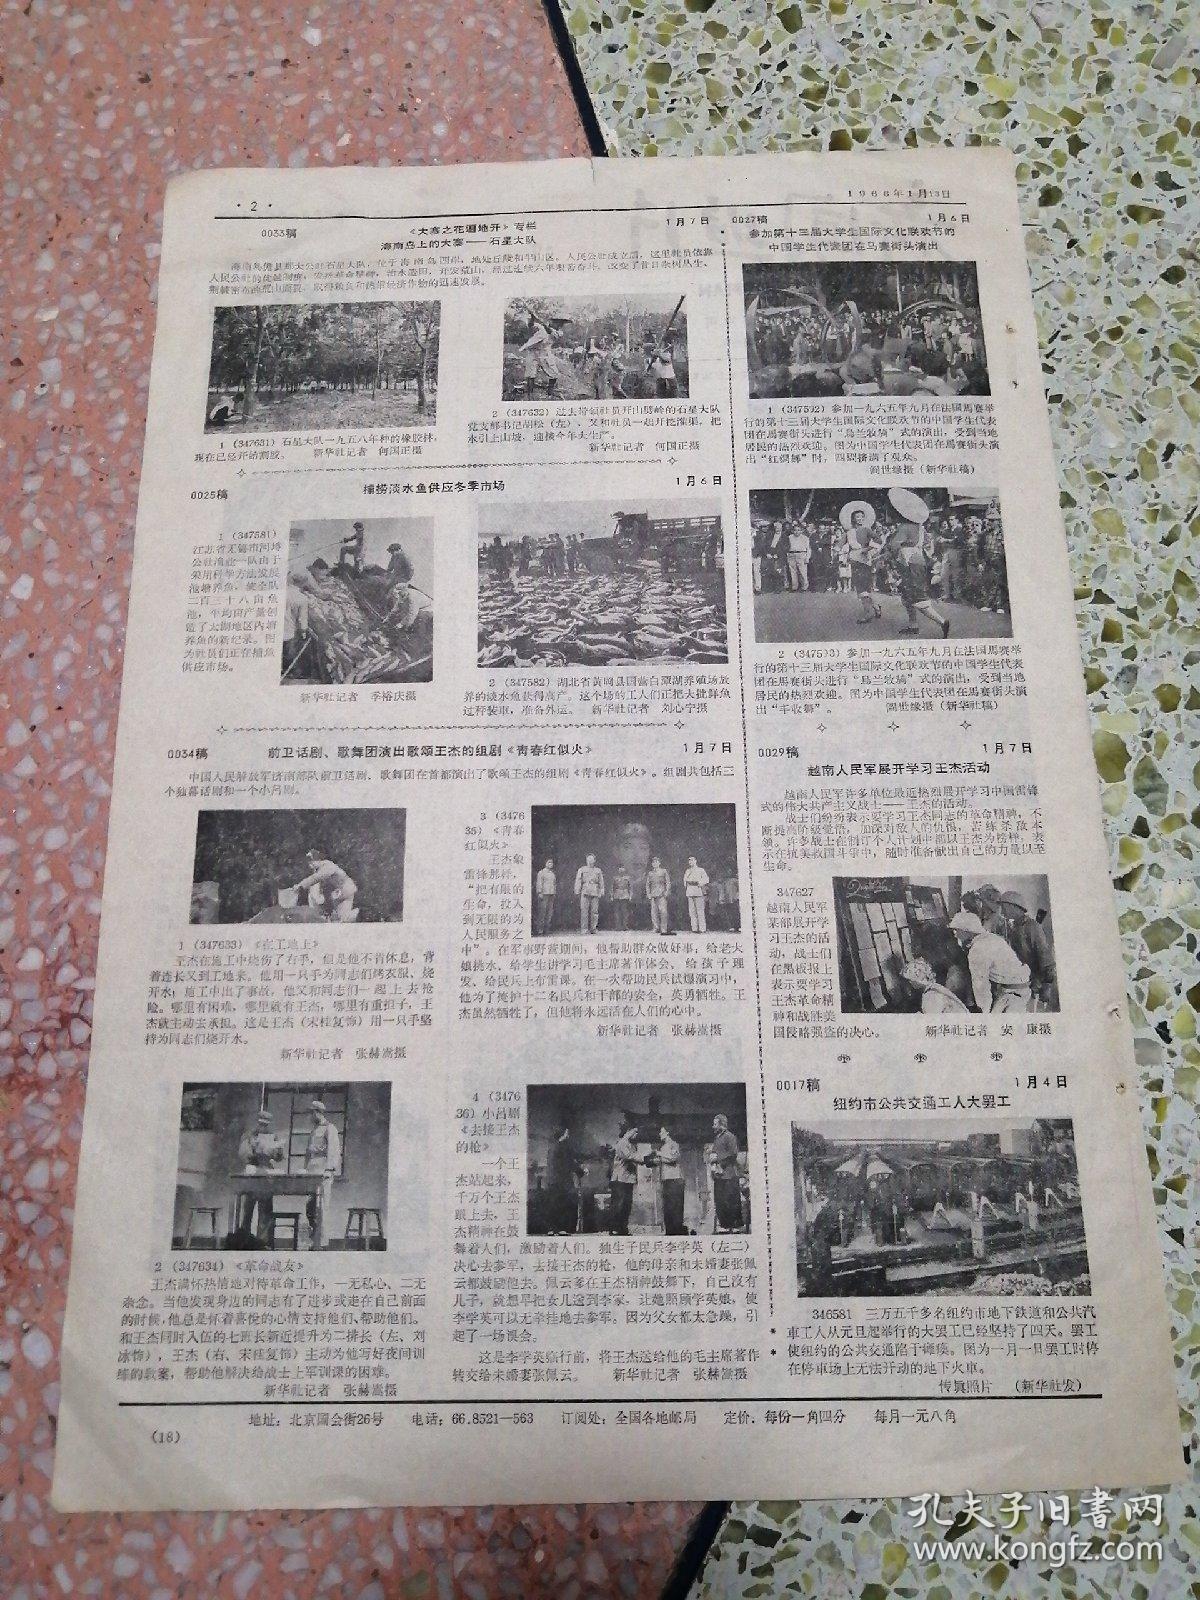 生日报新闻照片1966年1月13日（8开二版）周总理接见日本客人；为第三个五年计划生产更多更好的农业机械；对外文化联络委员会举行宴会欢送阿尔巴尼亚人民军歌舞团